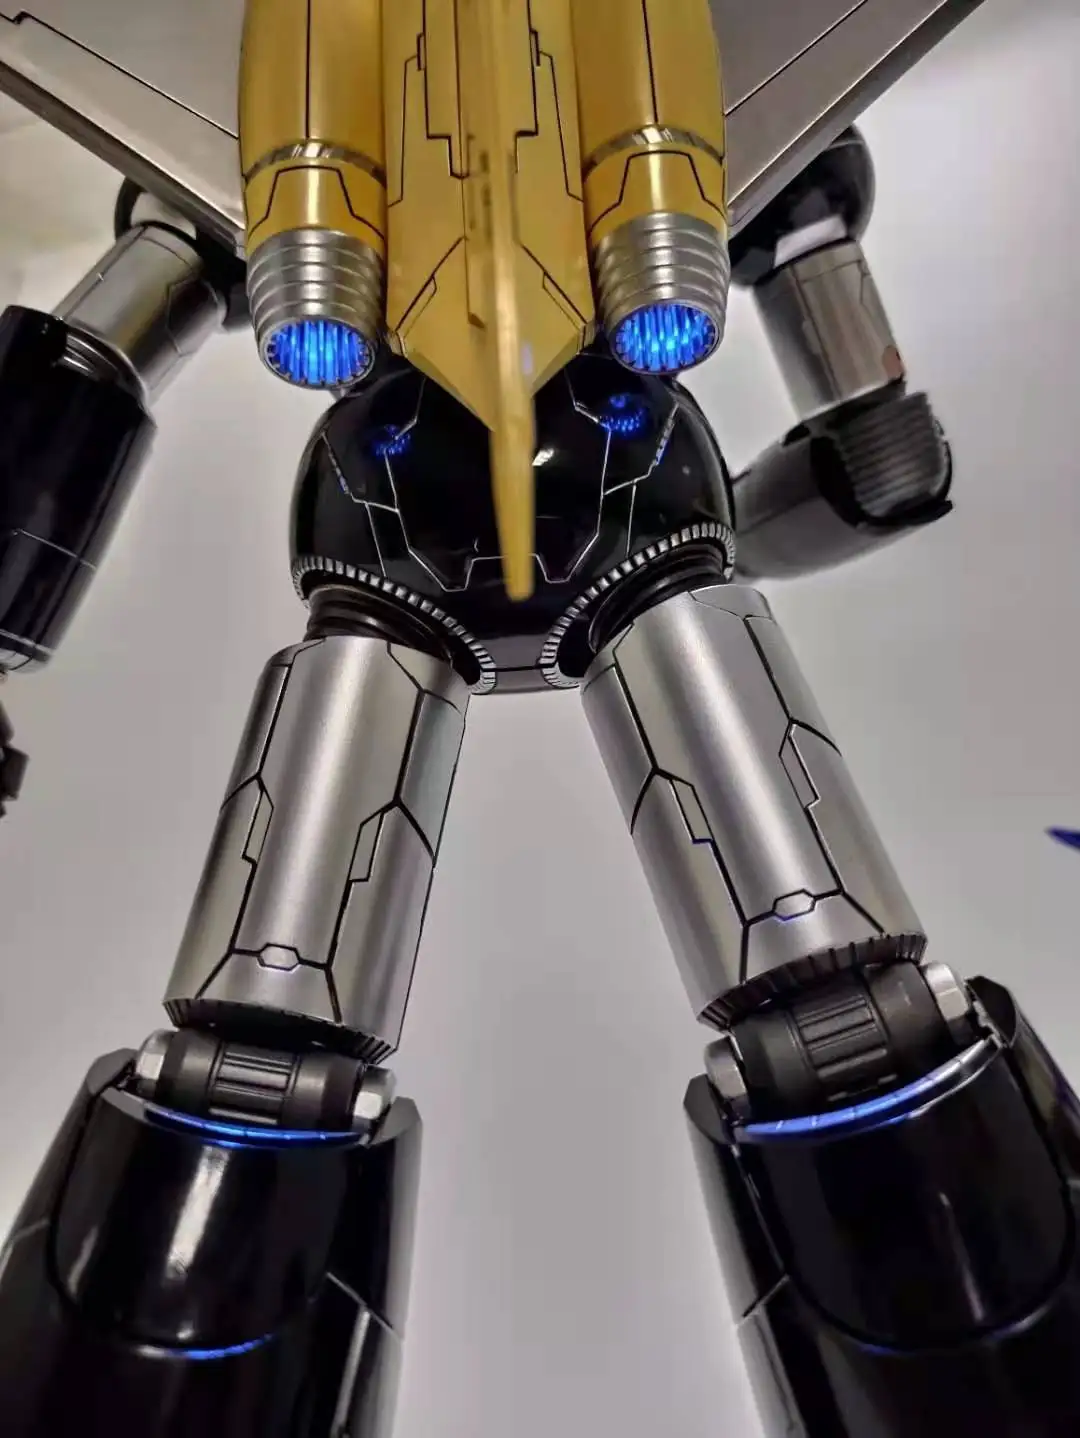 НОВИНКА В НАЛИЧИИ 37 см Трансформация King Arts Mazinger Z Oversize CR02, CR-02, основной черный цвет, фигурка КО, игрушки-роботы